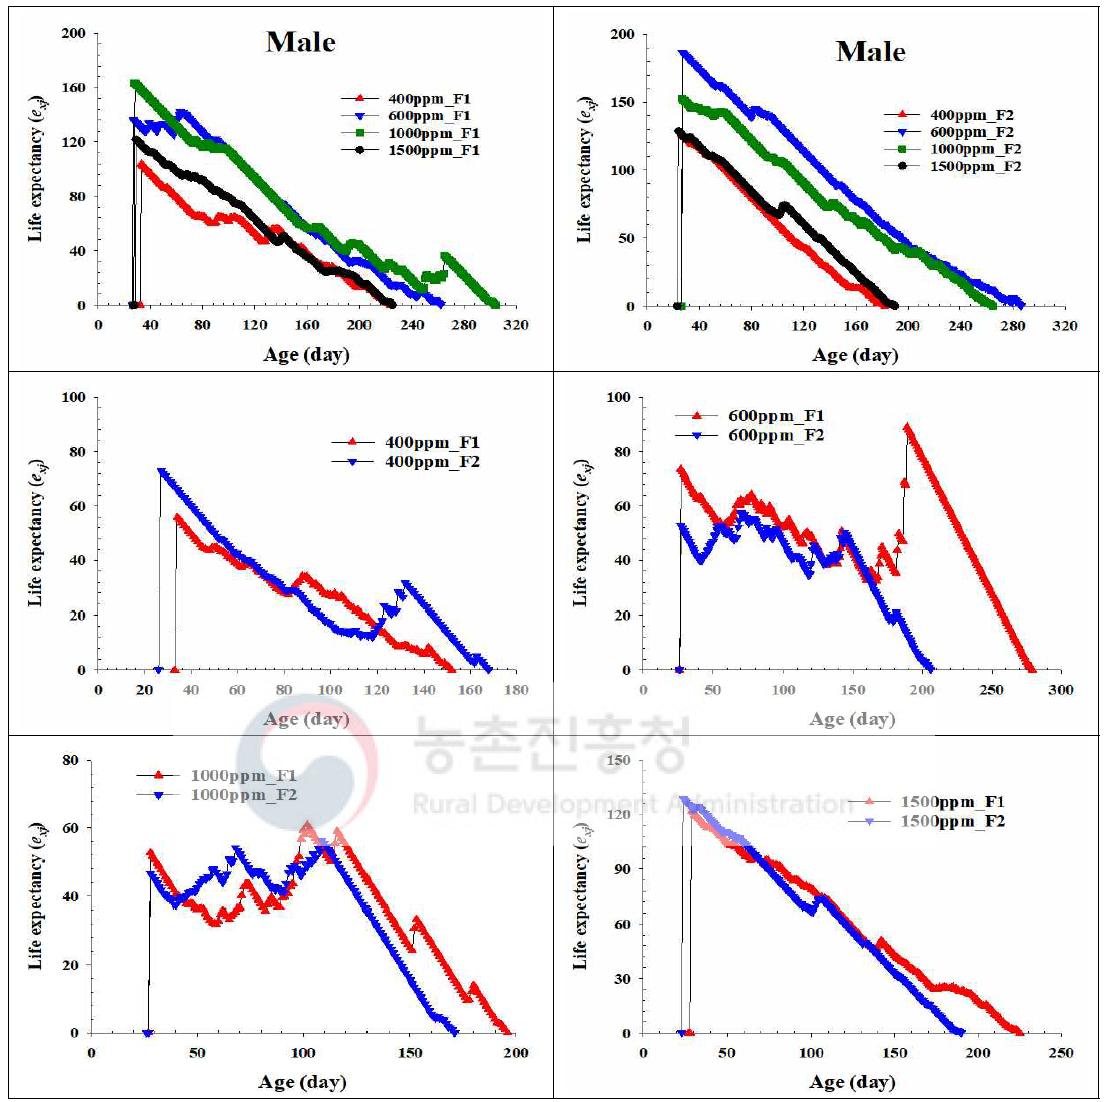 톱다리개미허리노린재 수컷의 이산화탄소 농도수준에 따른 세대간 기대 수명 비교